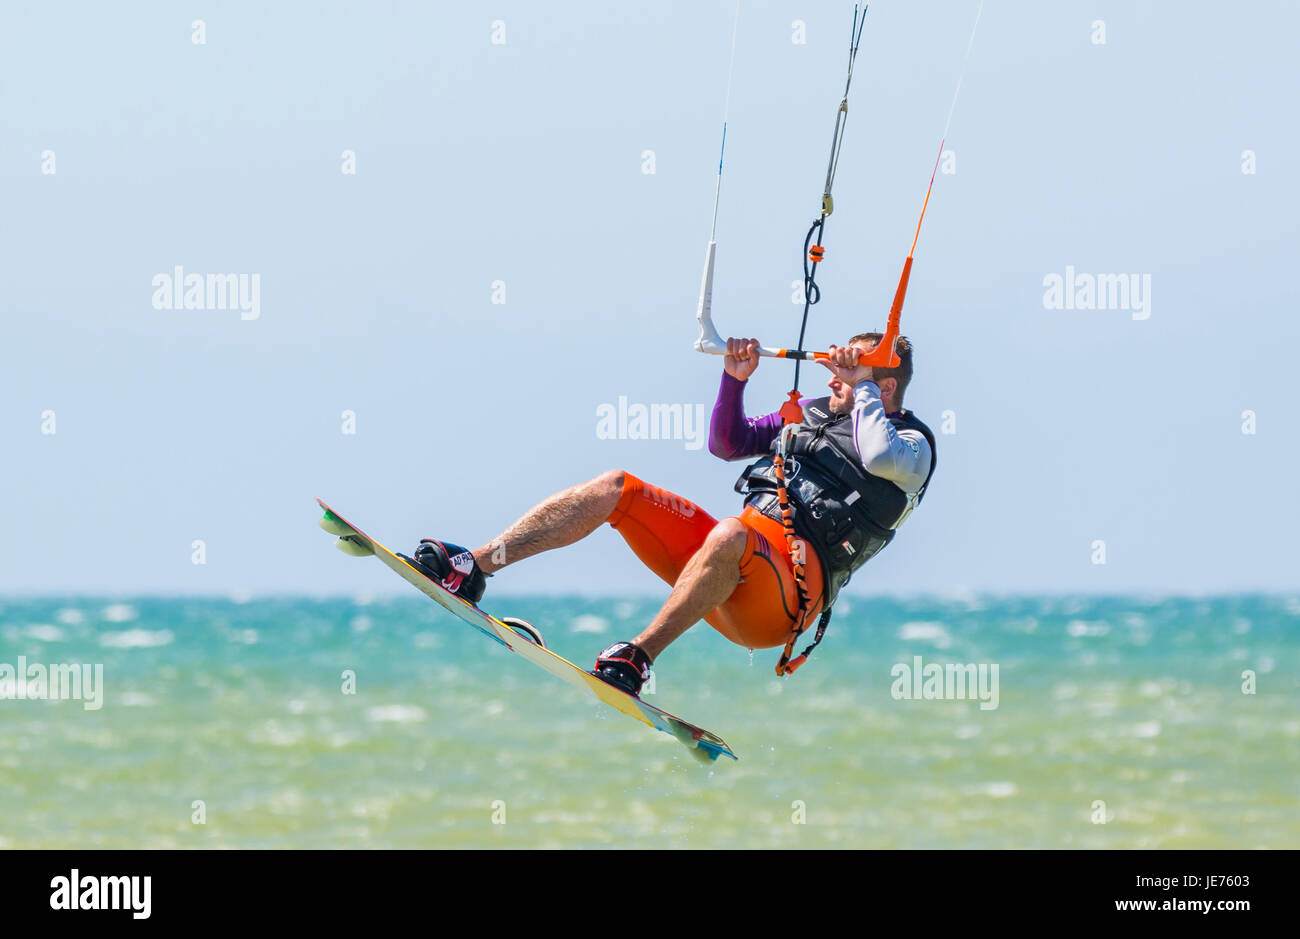 Kitesurfer volare in aria come egli fa uno stunt mentre in mare in una giornata di vento. Foto Stock